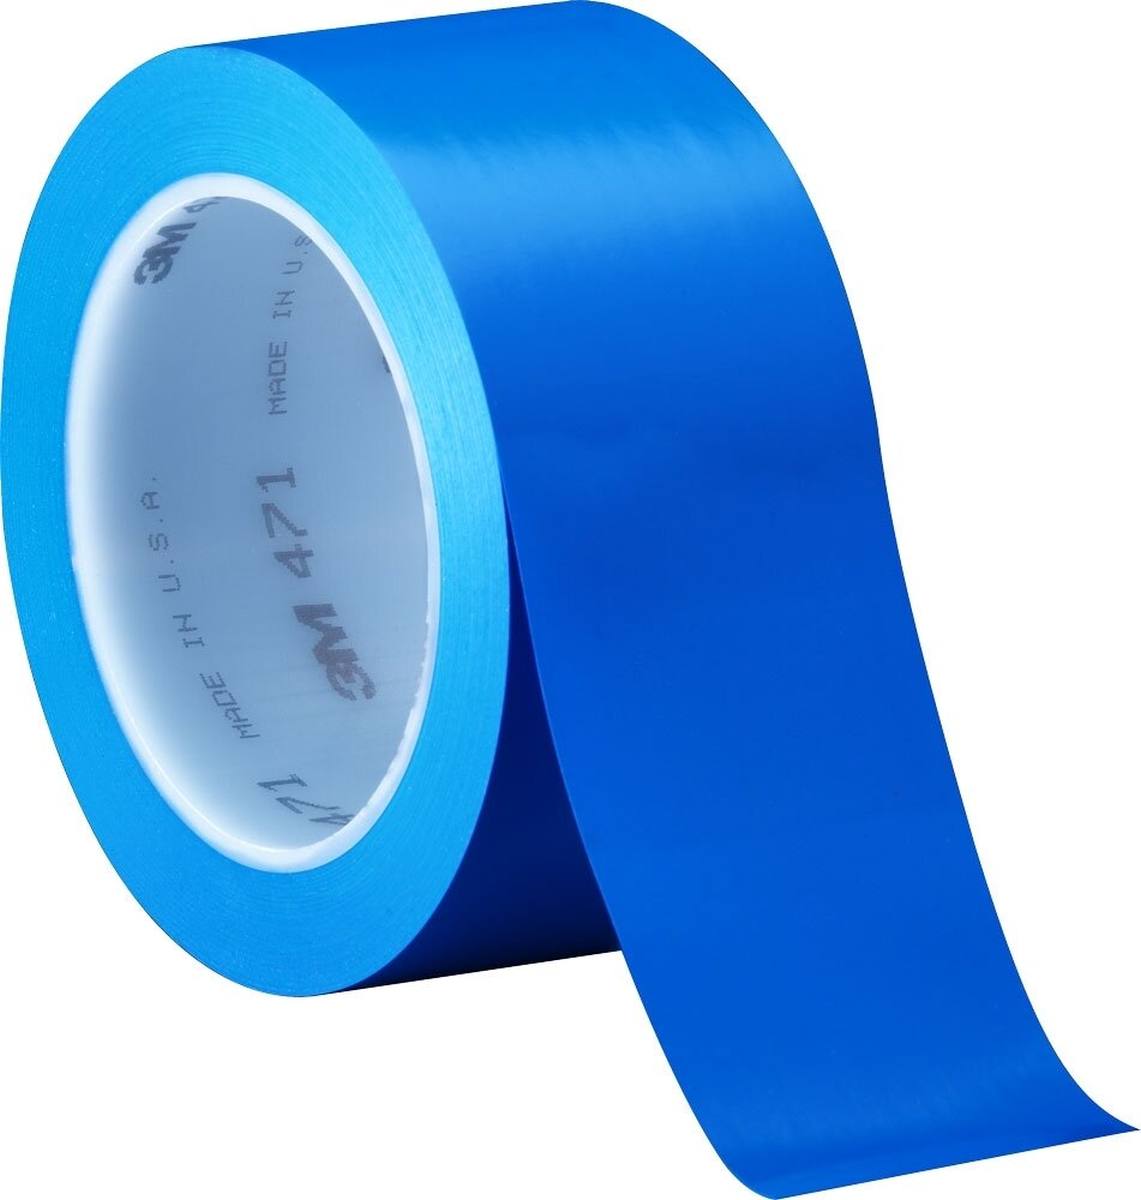 Cinta adhesiva de PVC blando 3M 471 F, azul, 50 mm x 33 m, 0,13 mm, embalada individualmente y de forma práctica